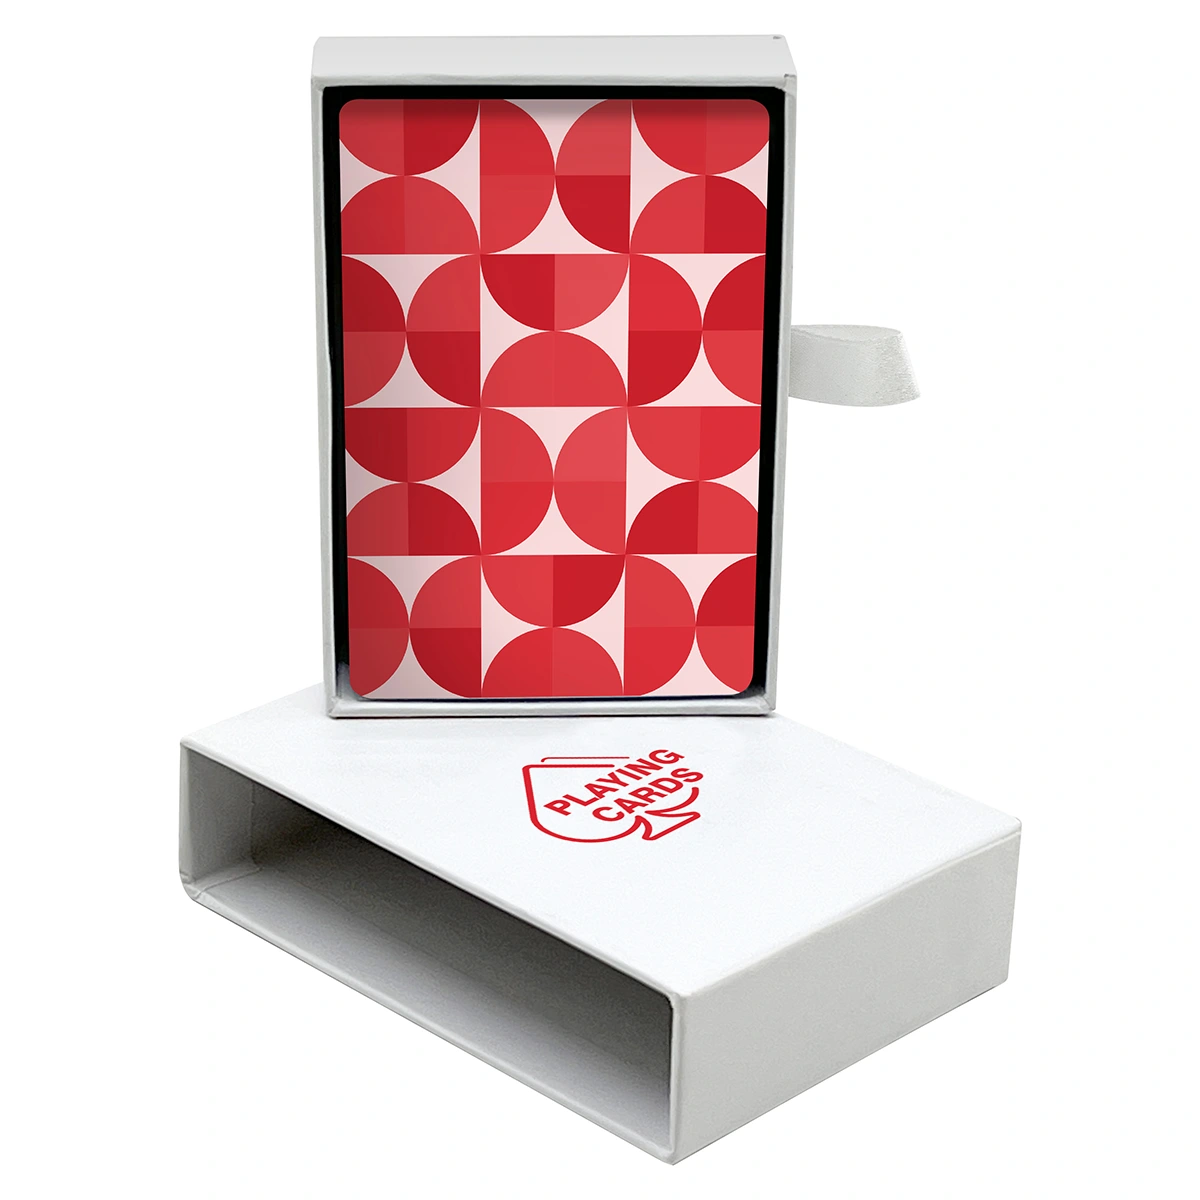 브리지/포커 카드용 서랍 상자(자석 및 리본 포함)